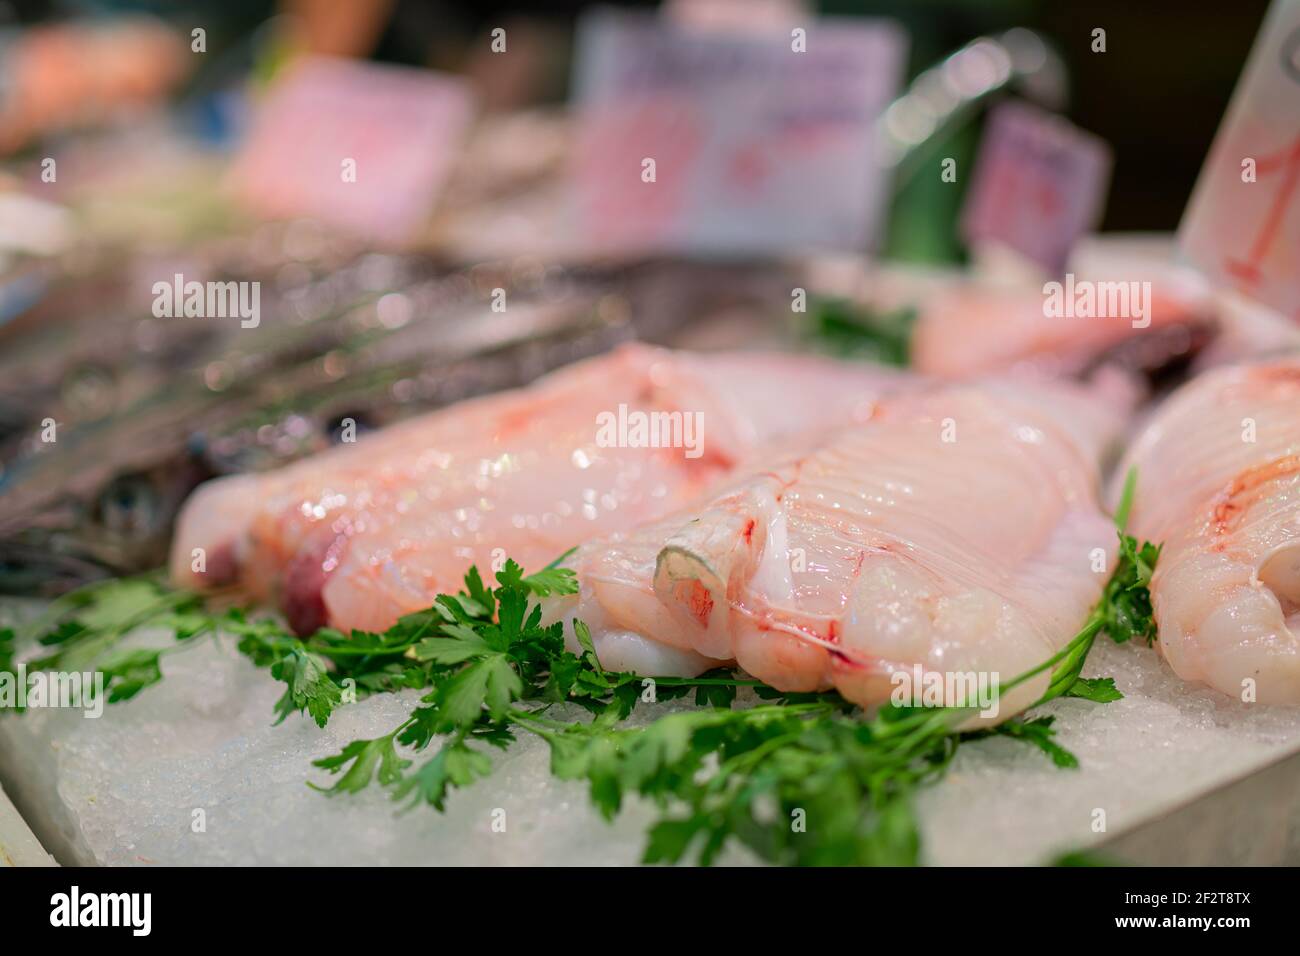 Monkfishon frais sur le comptoir du marché aux poissons. Rana Pescatrice, Coda di rospo. Mise au point sélective. Banque D'Images